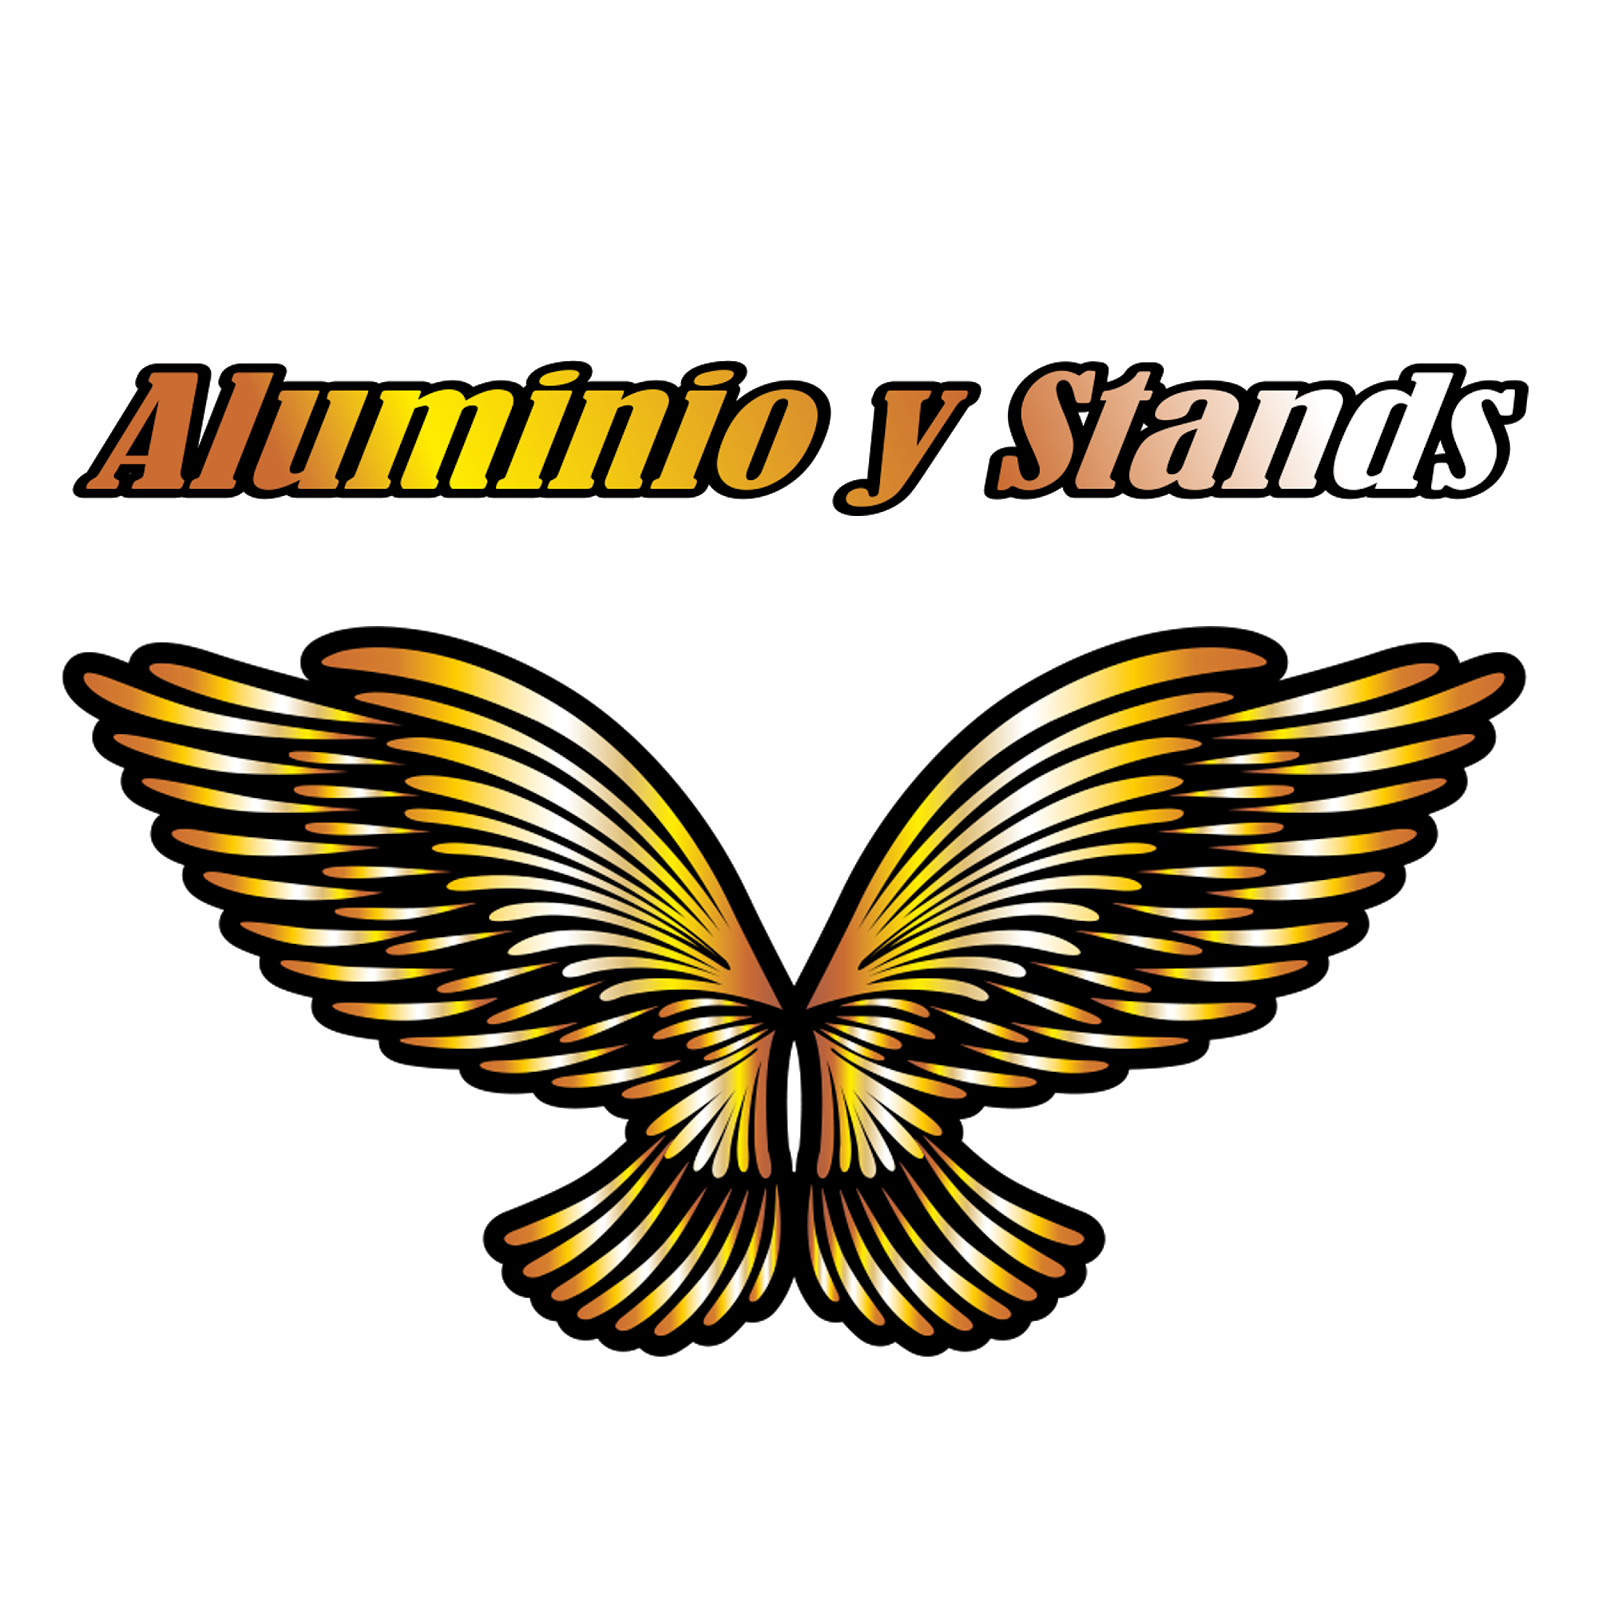 Aluminio y Stands